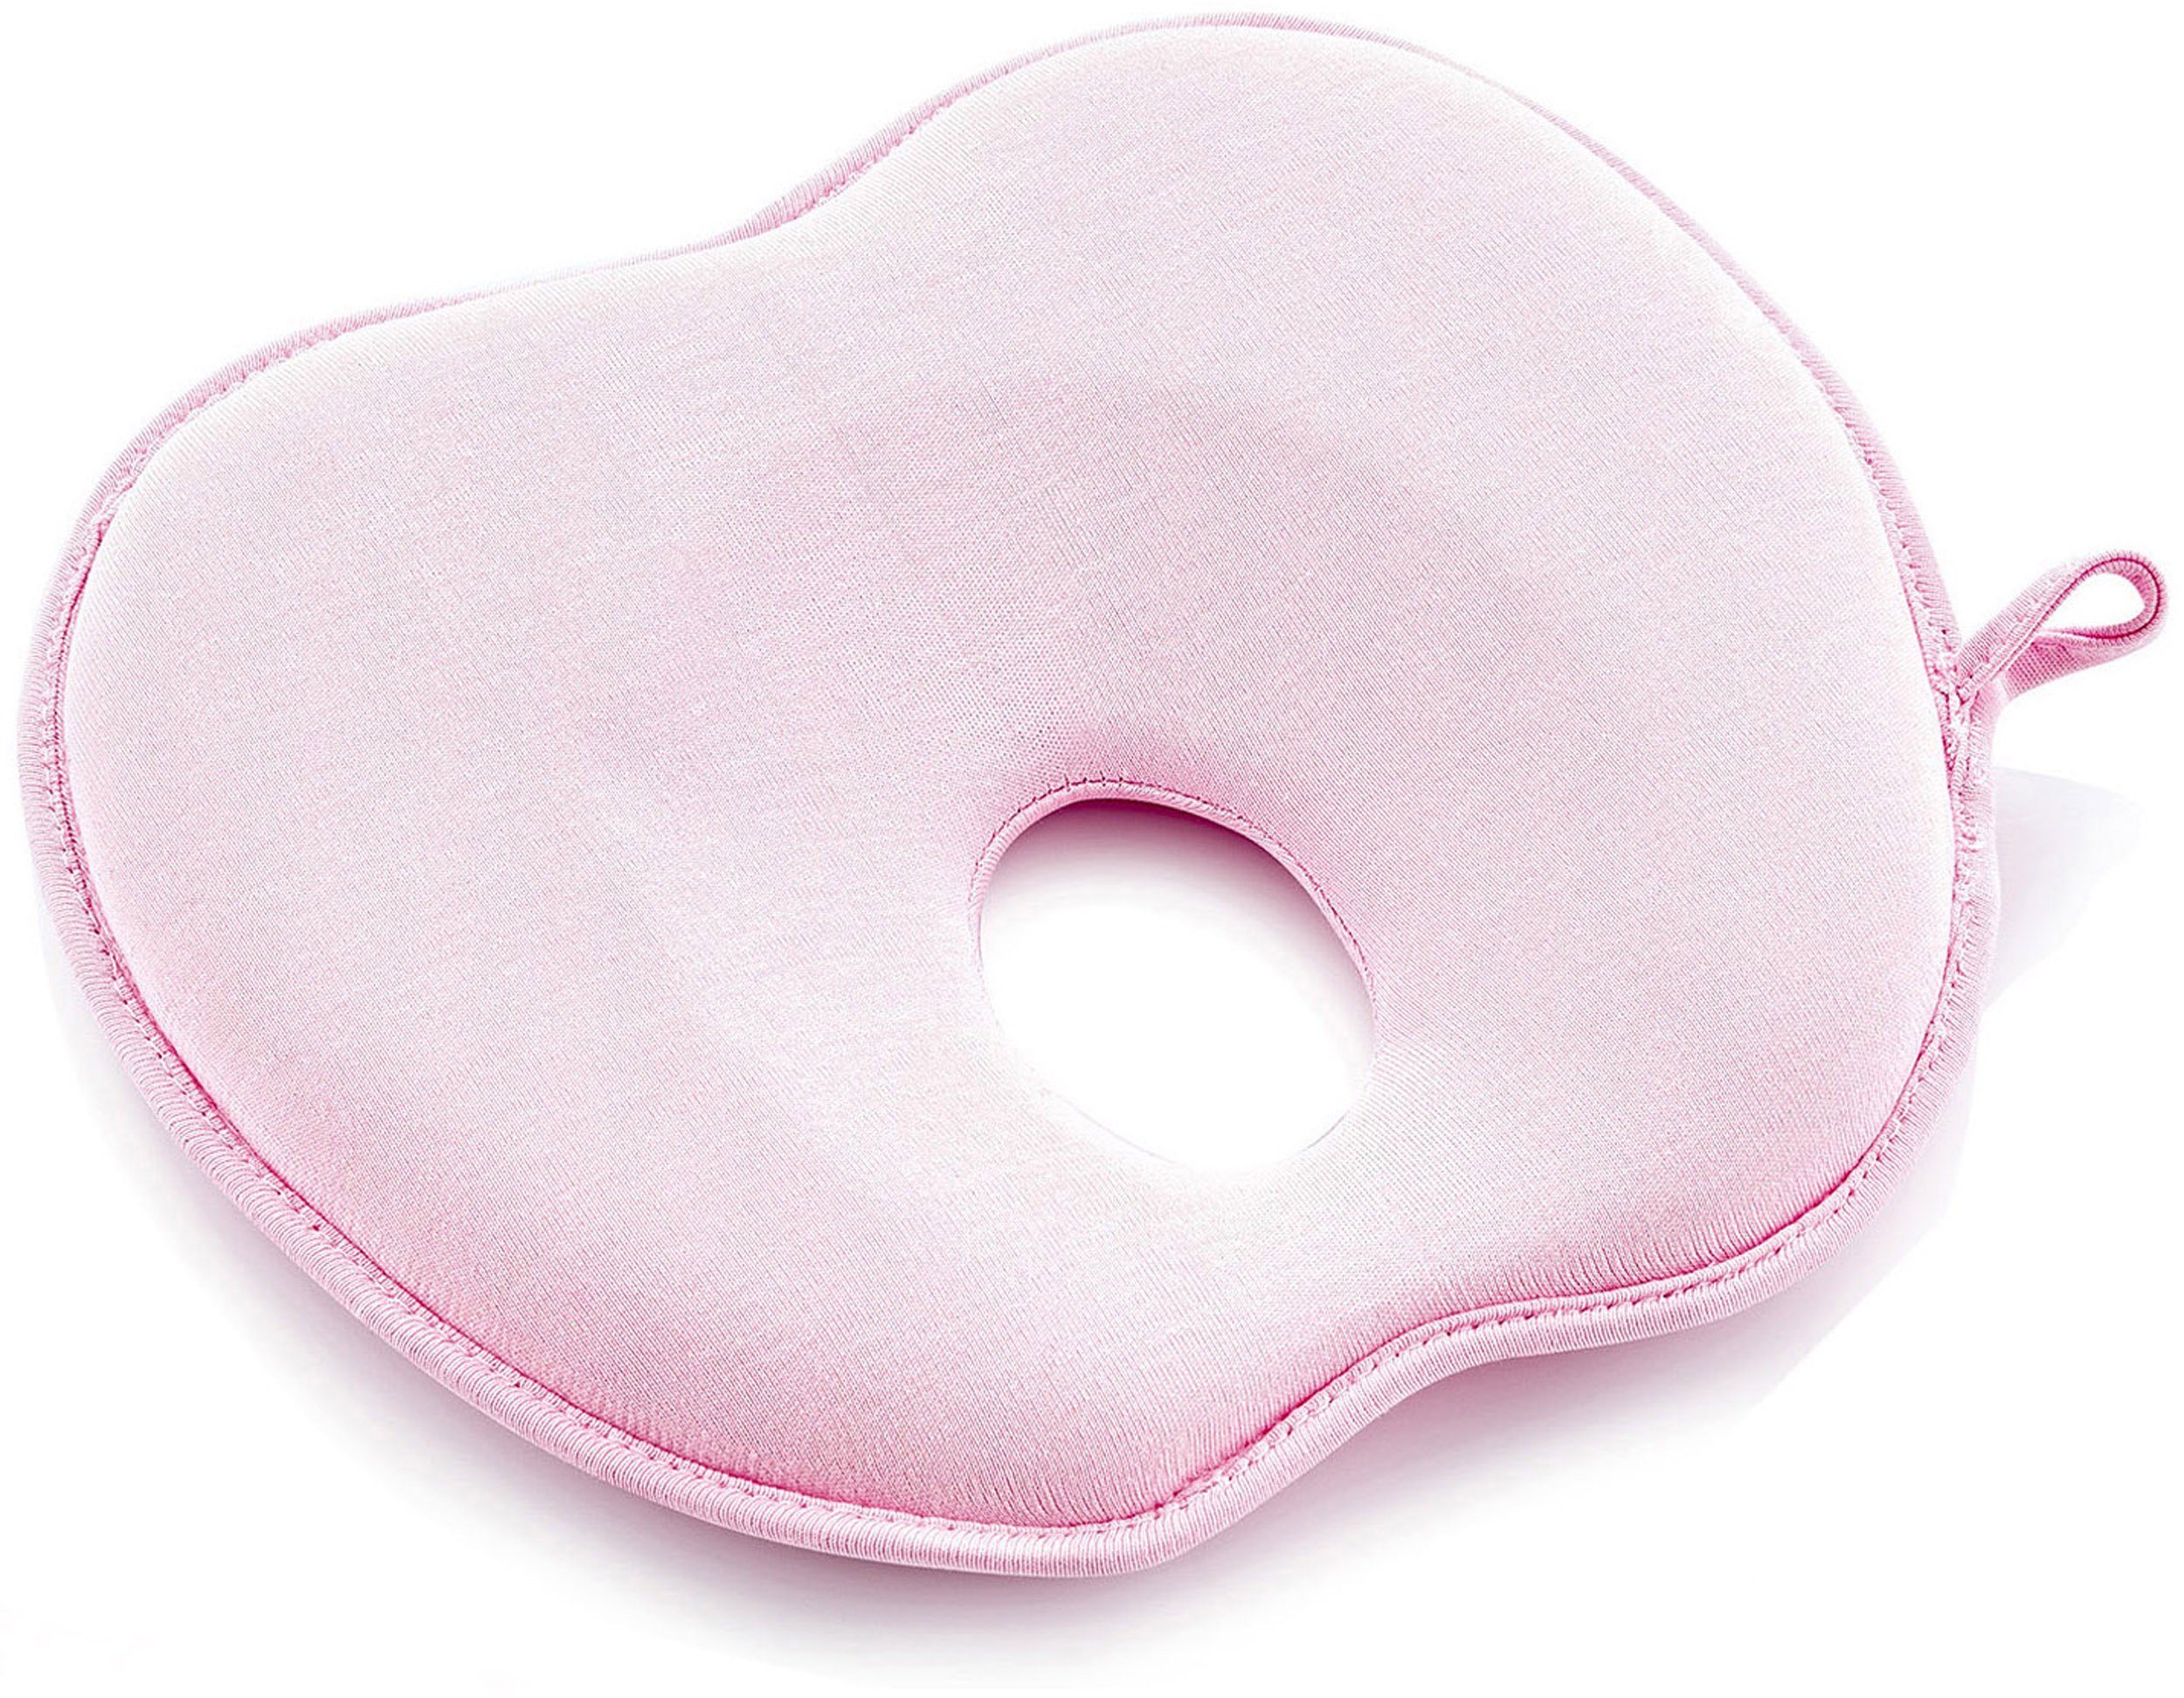 Babyjem Stützkissen Flaches Kopfkissen, pink, für Babys; Made in Europe